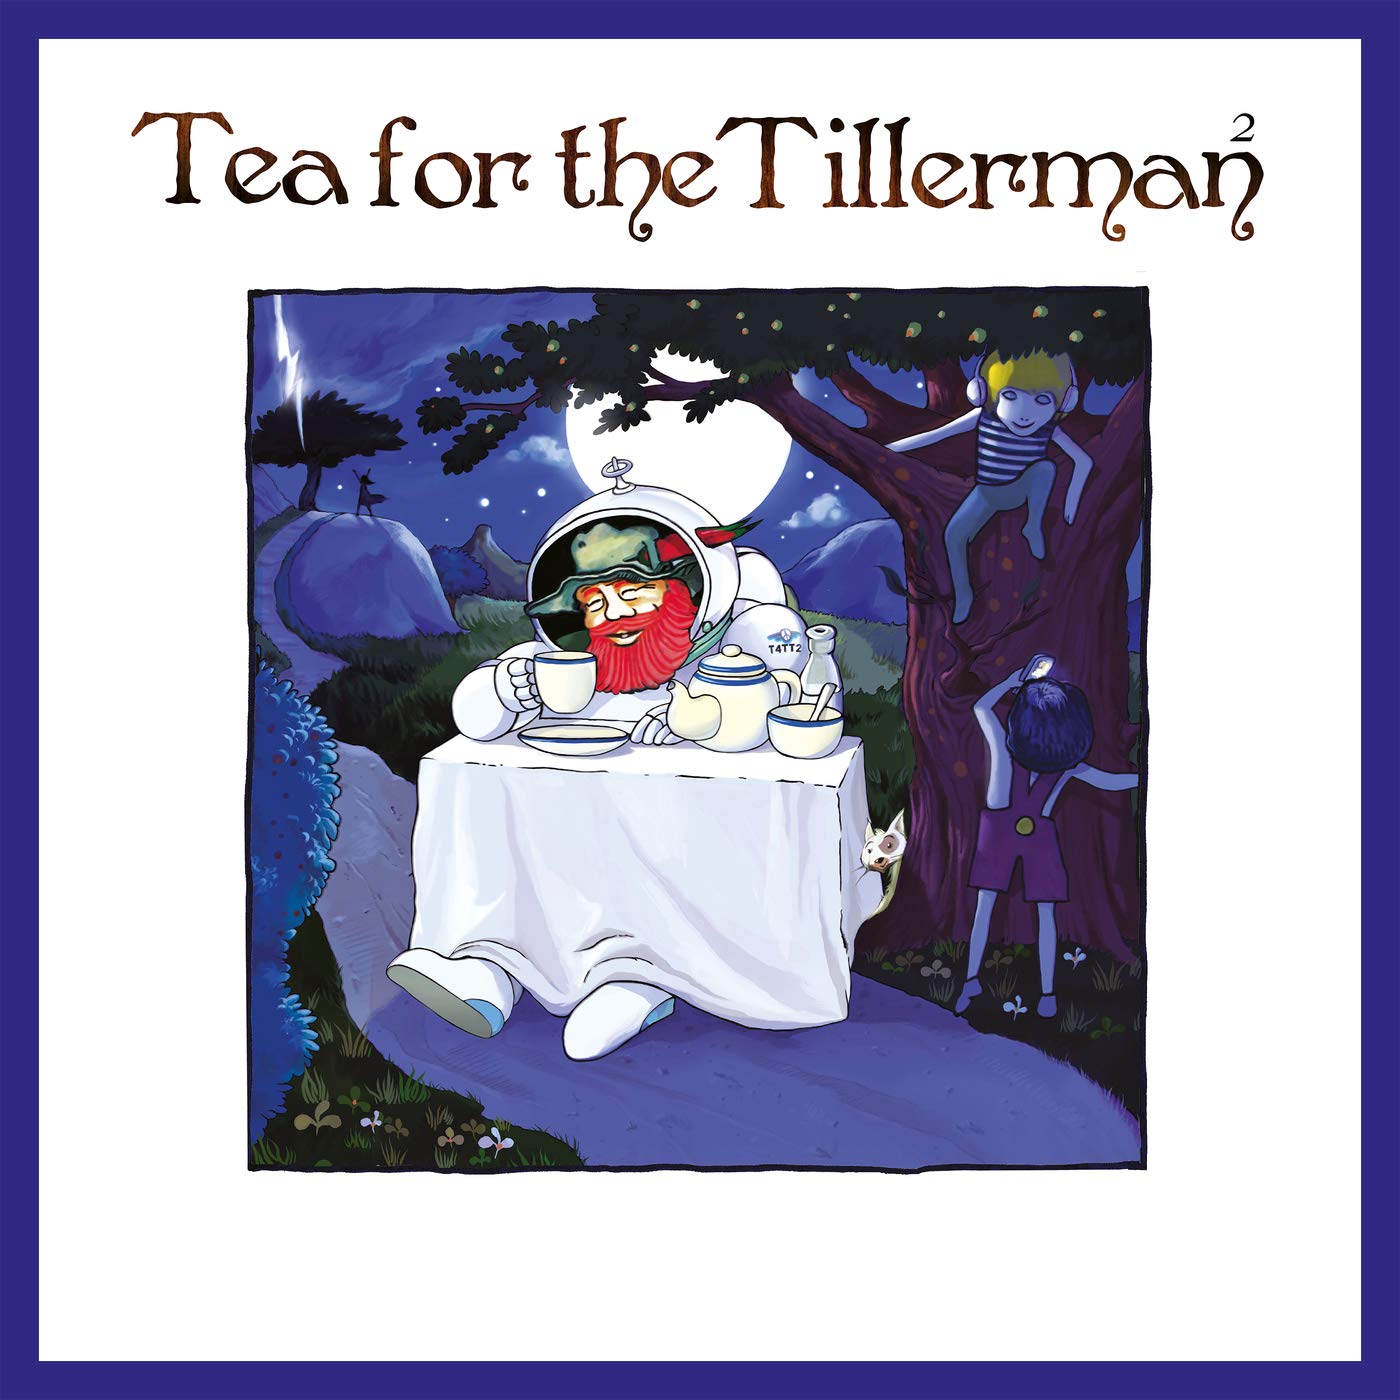 Yusuf/Cat Stevens: Tea for the Tillerman²